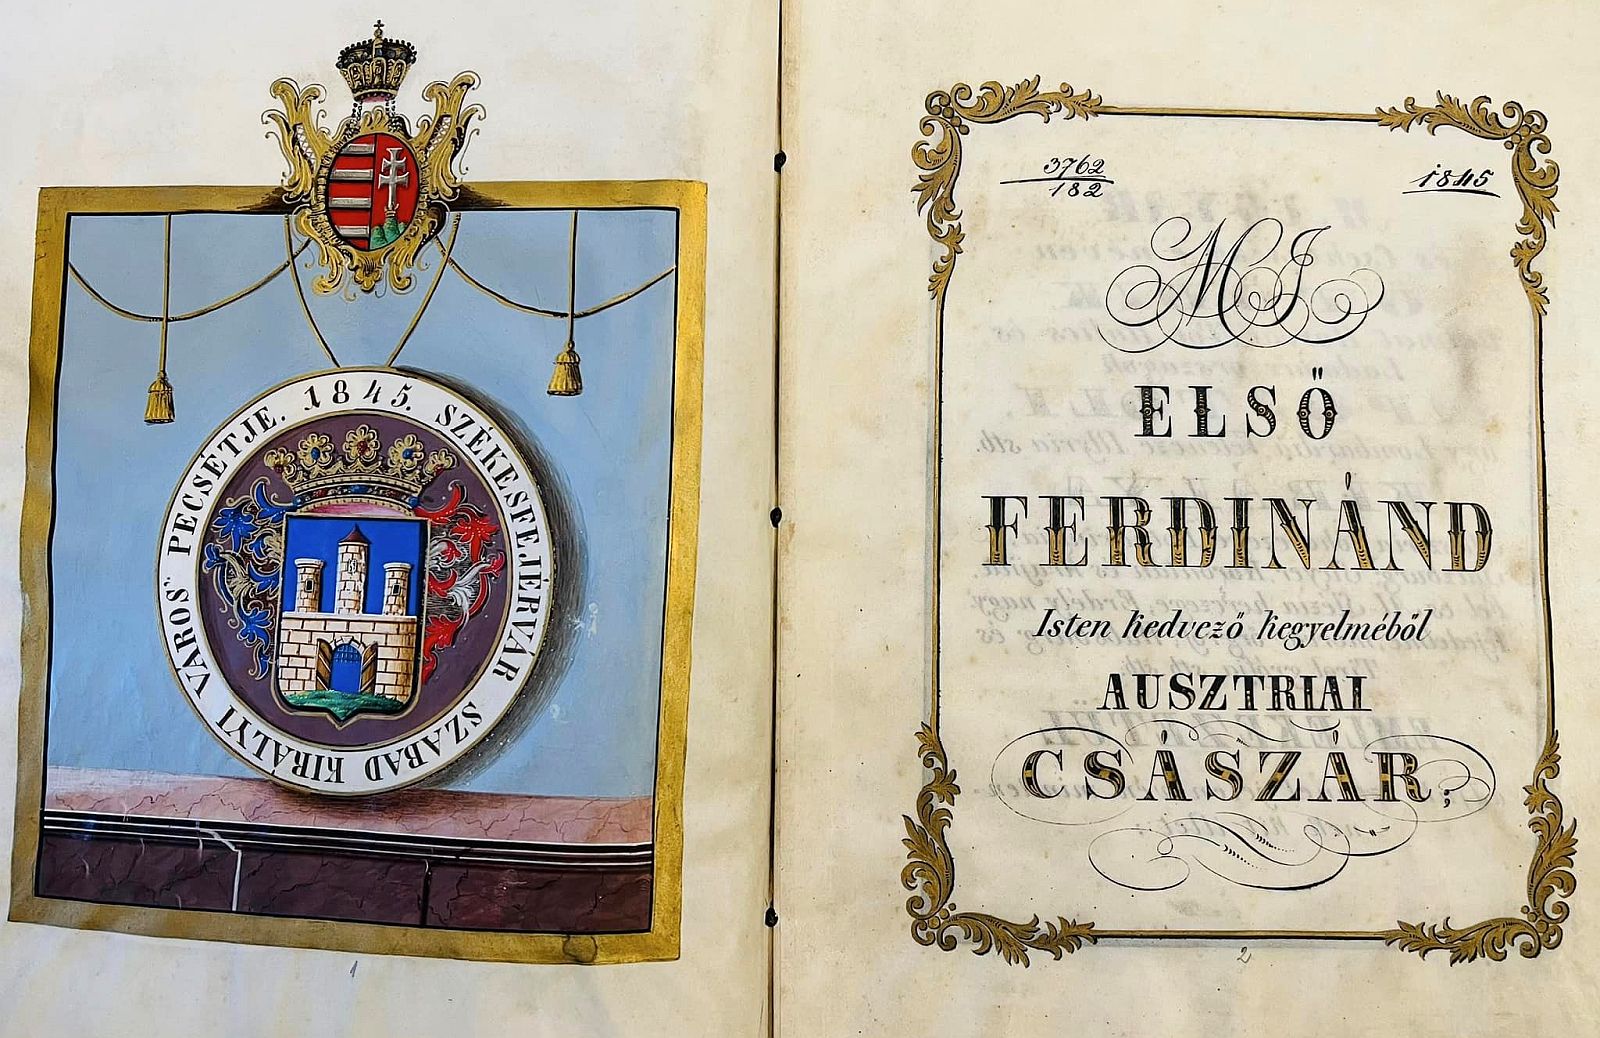 Fantasztikus emlék - a múzeumi világnapon került vissza az 1845-ben kiadott oklevél a Városházára